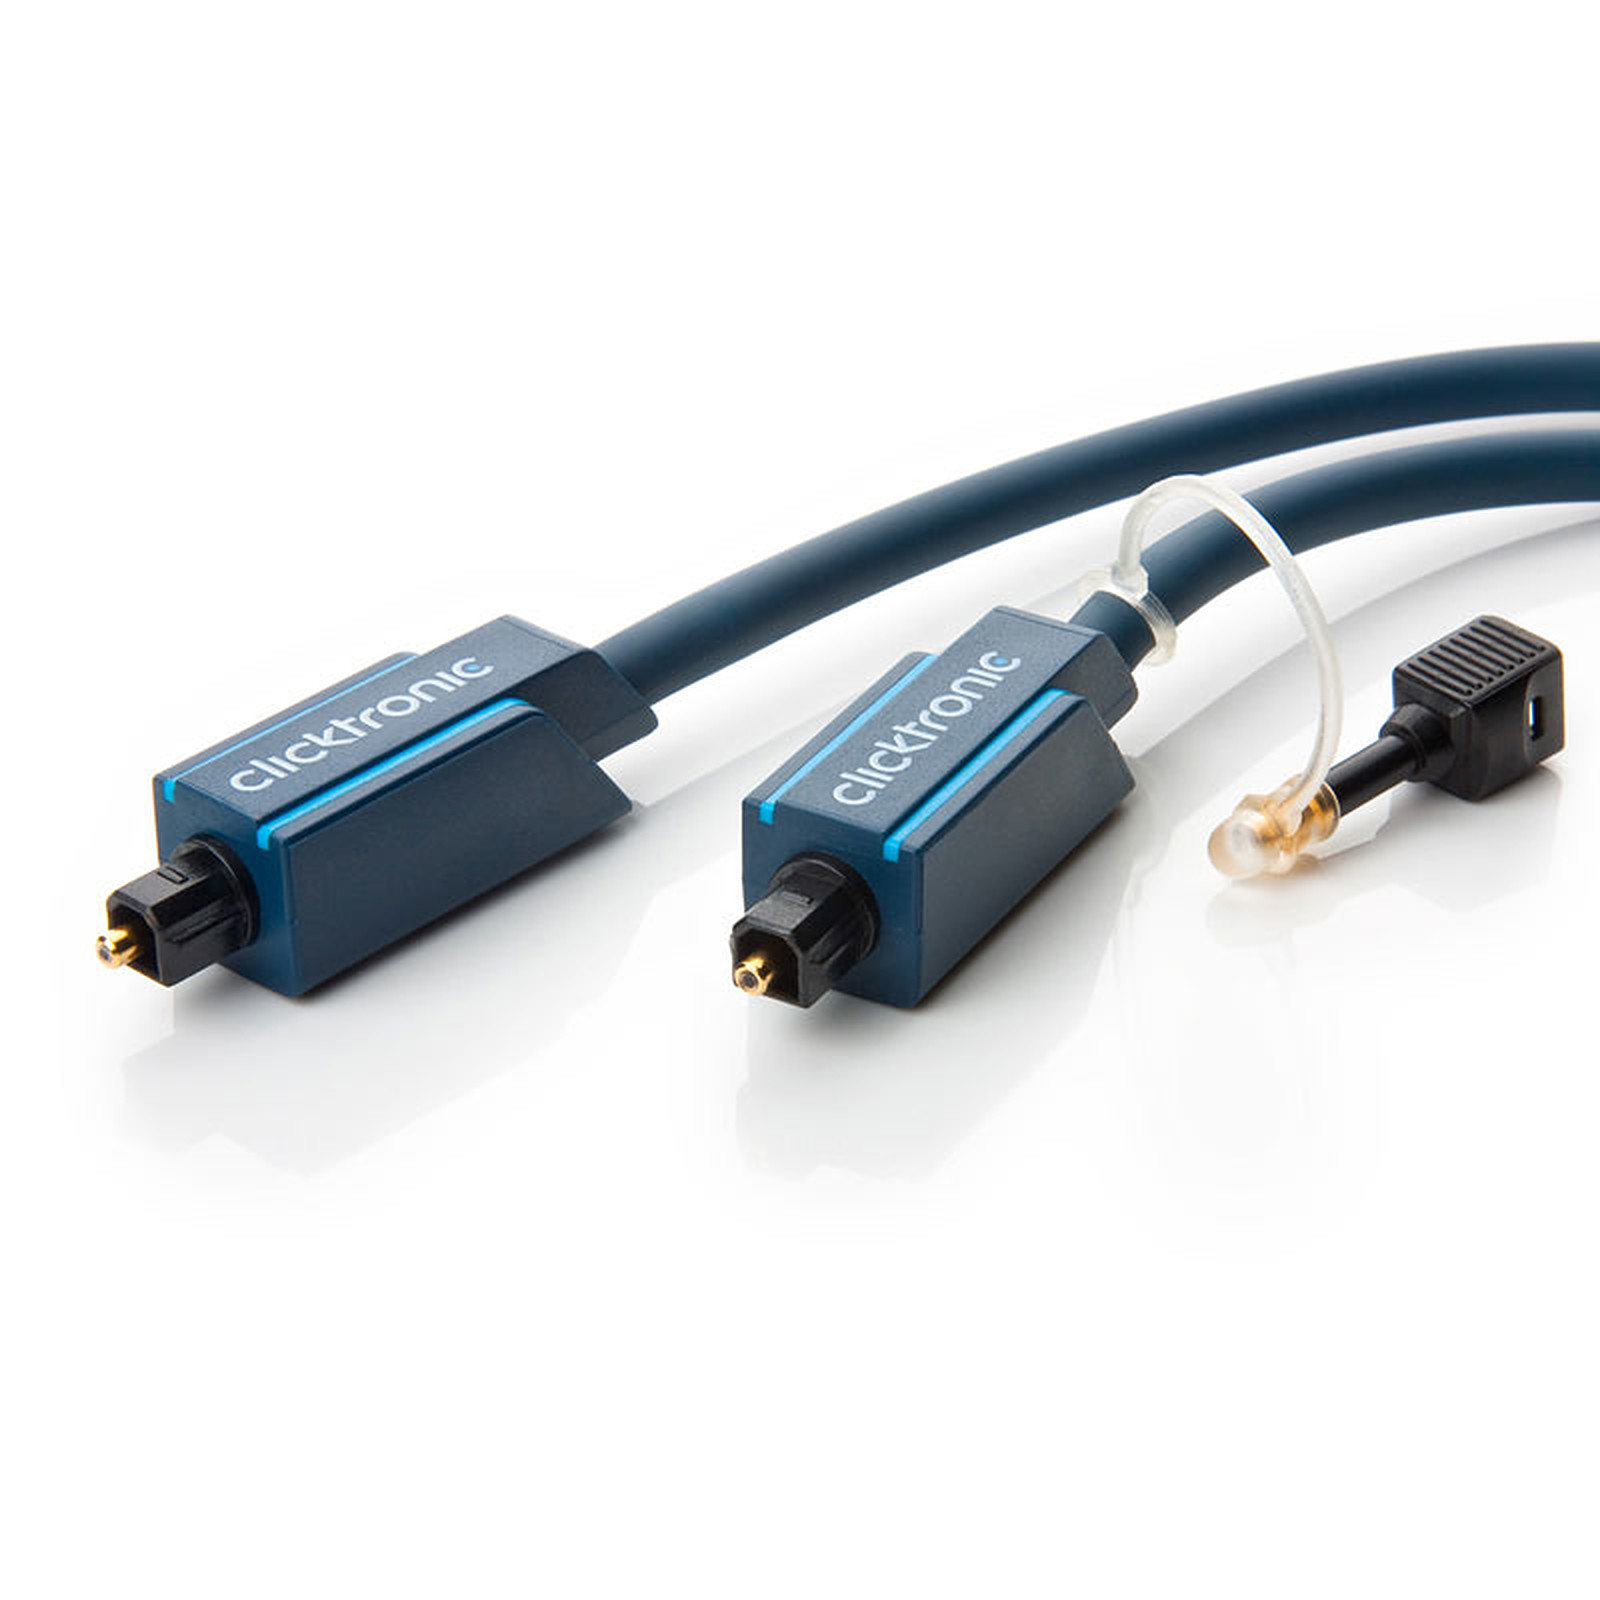 Clicktronic cable Toslink (7.5 mètres) - Cable audio numerique Clicktronic